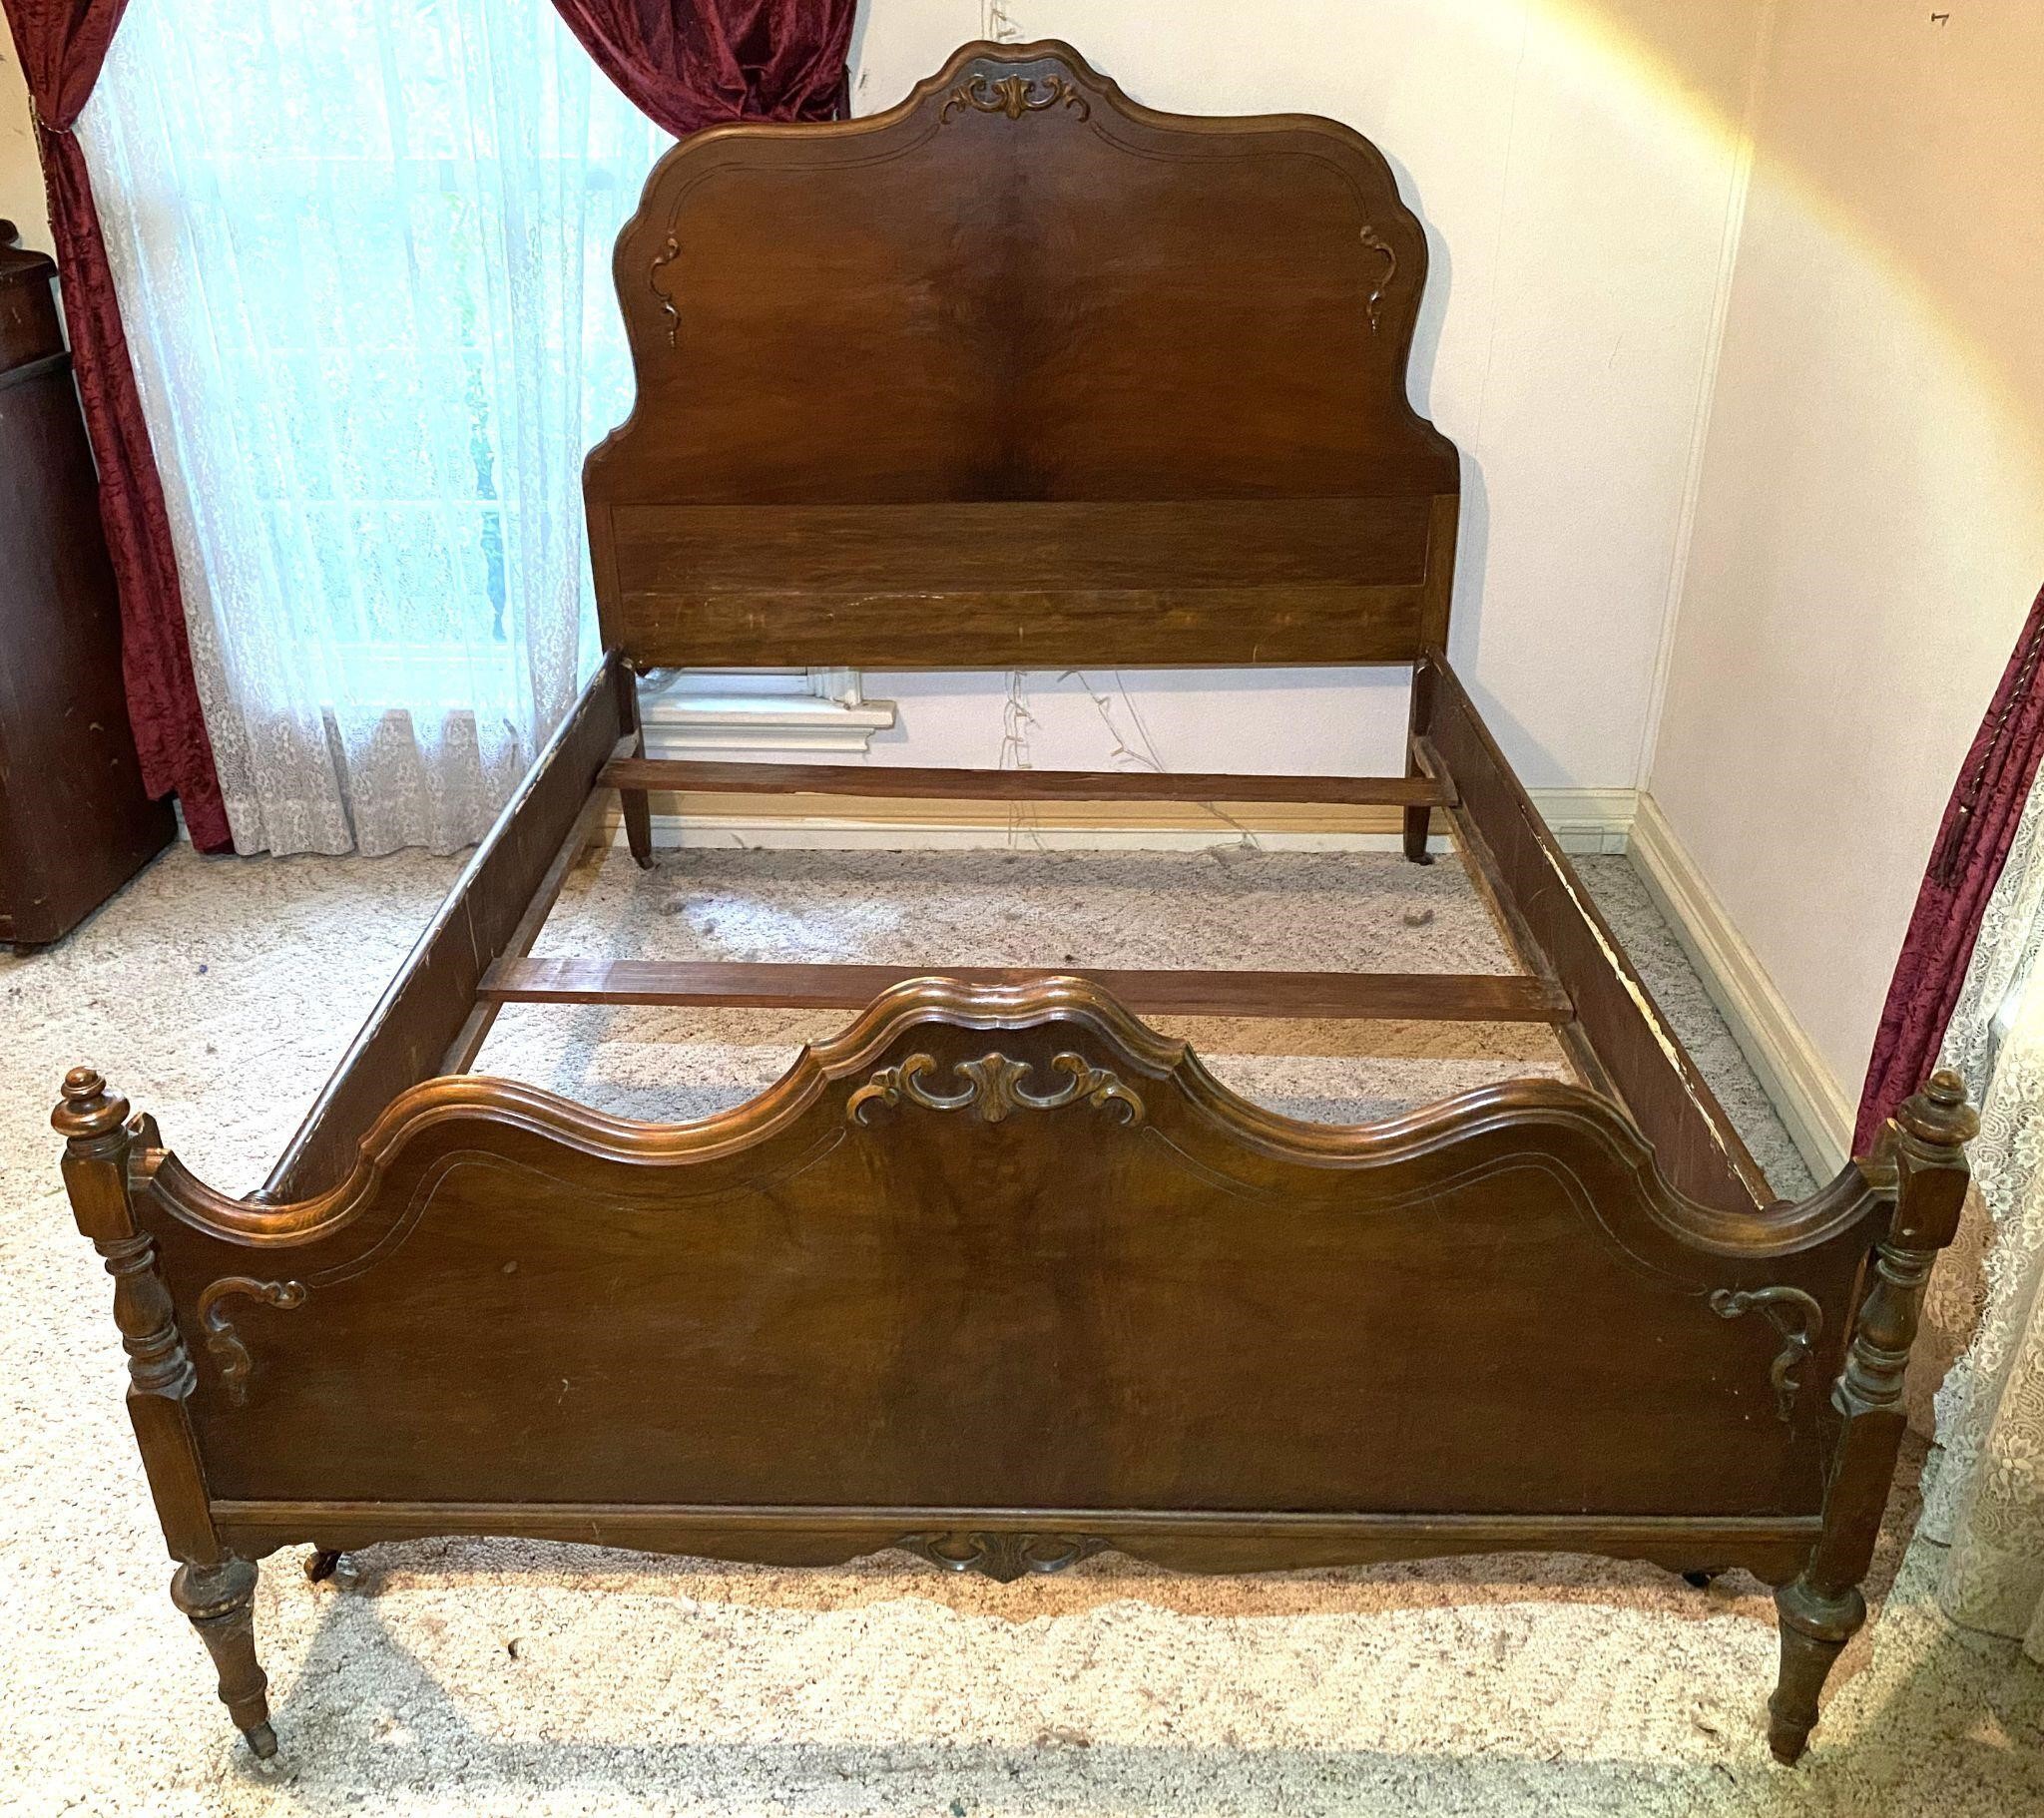 Antique Wood Full Size Bedframe